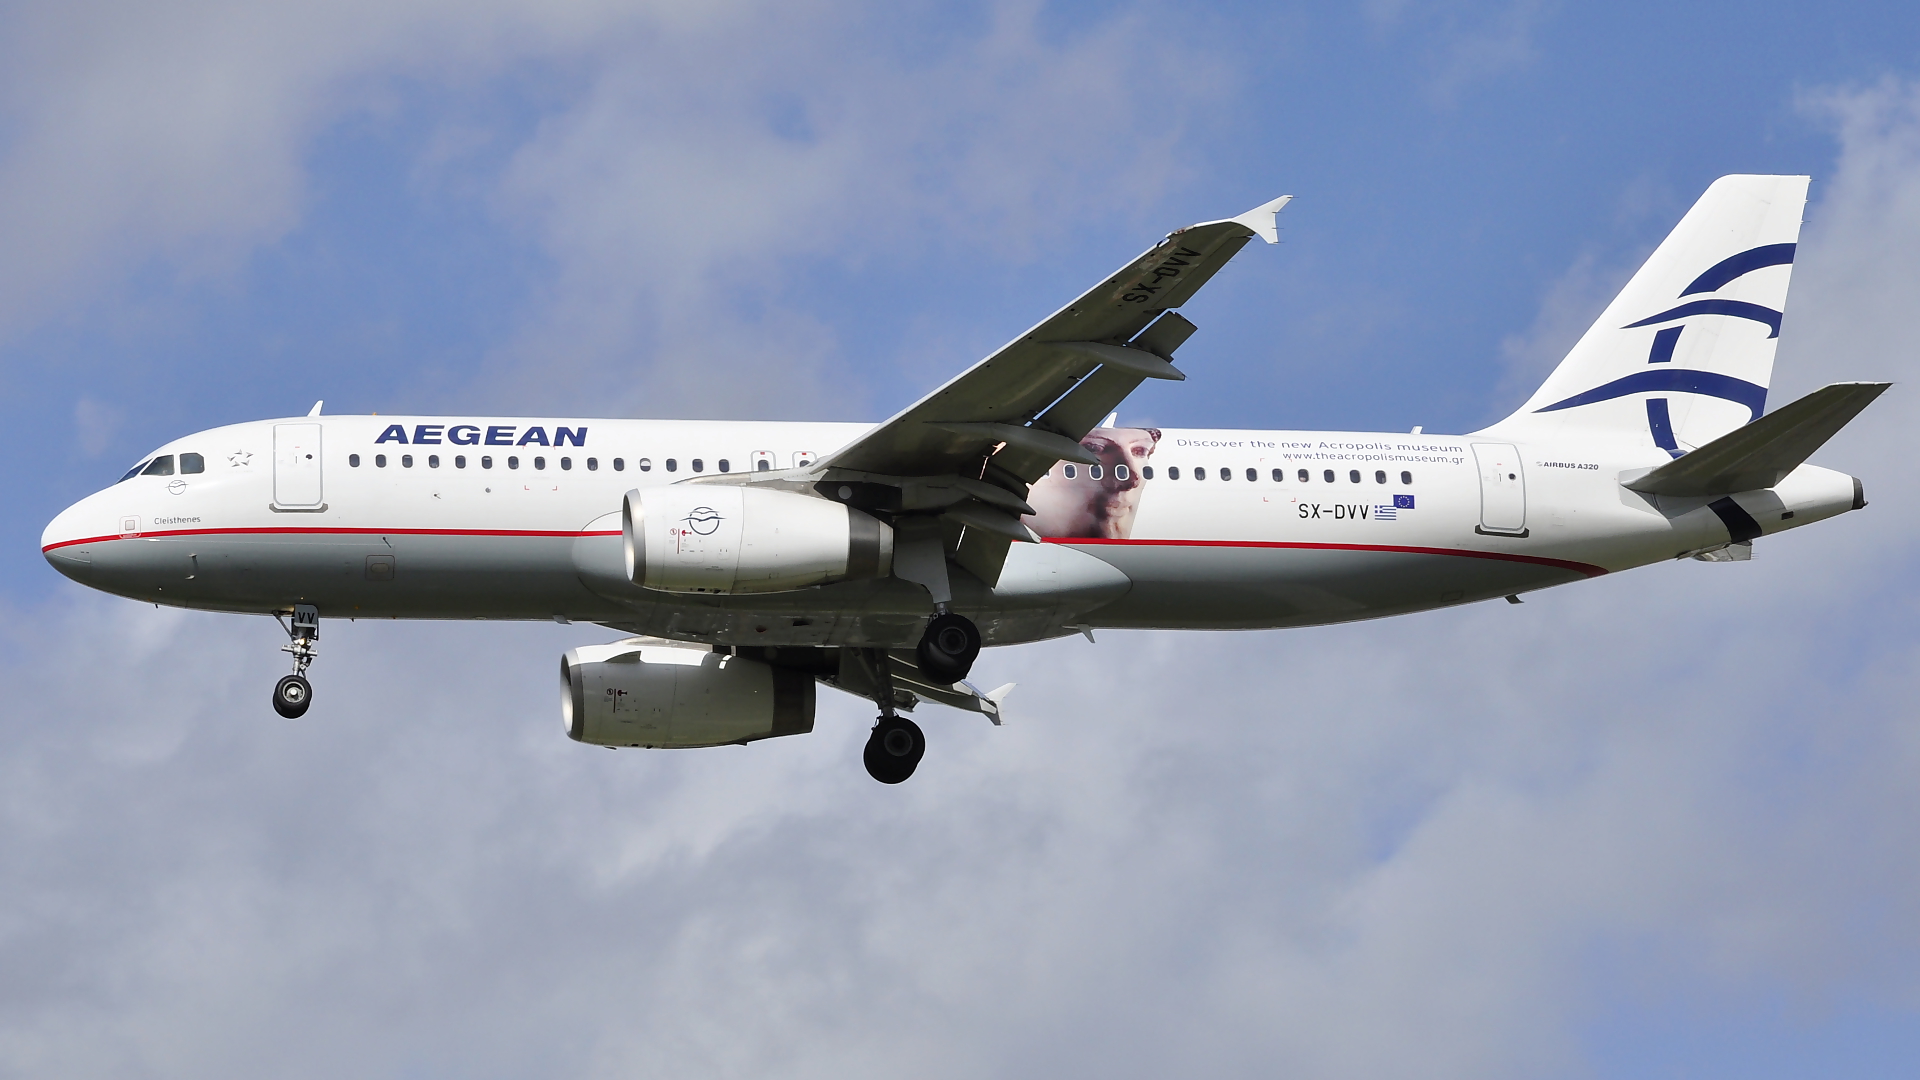 SX-DVV ✈ Aegean Airlines Airbus 320-232 @ London-Heathrow